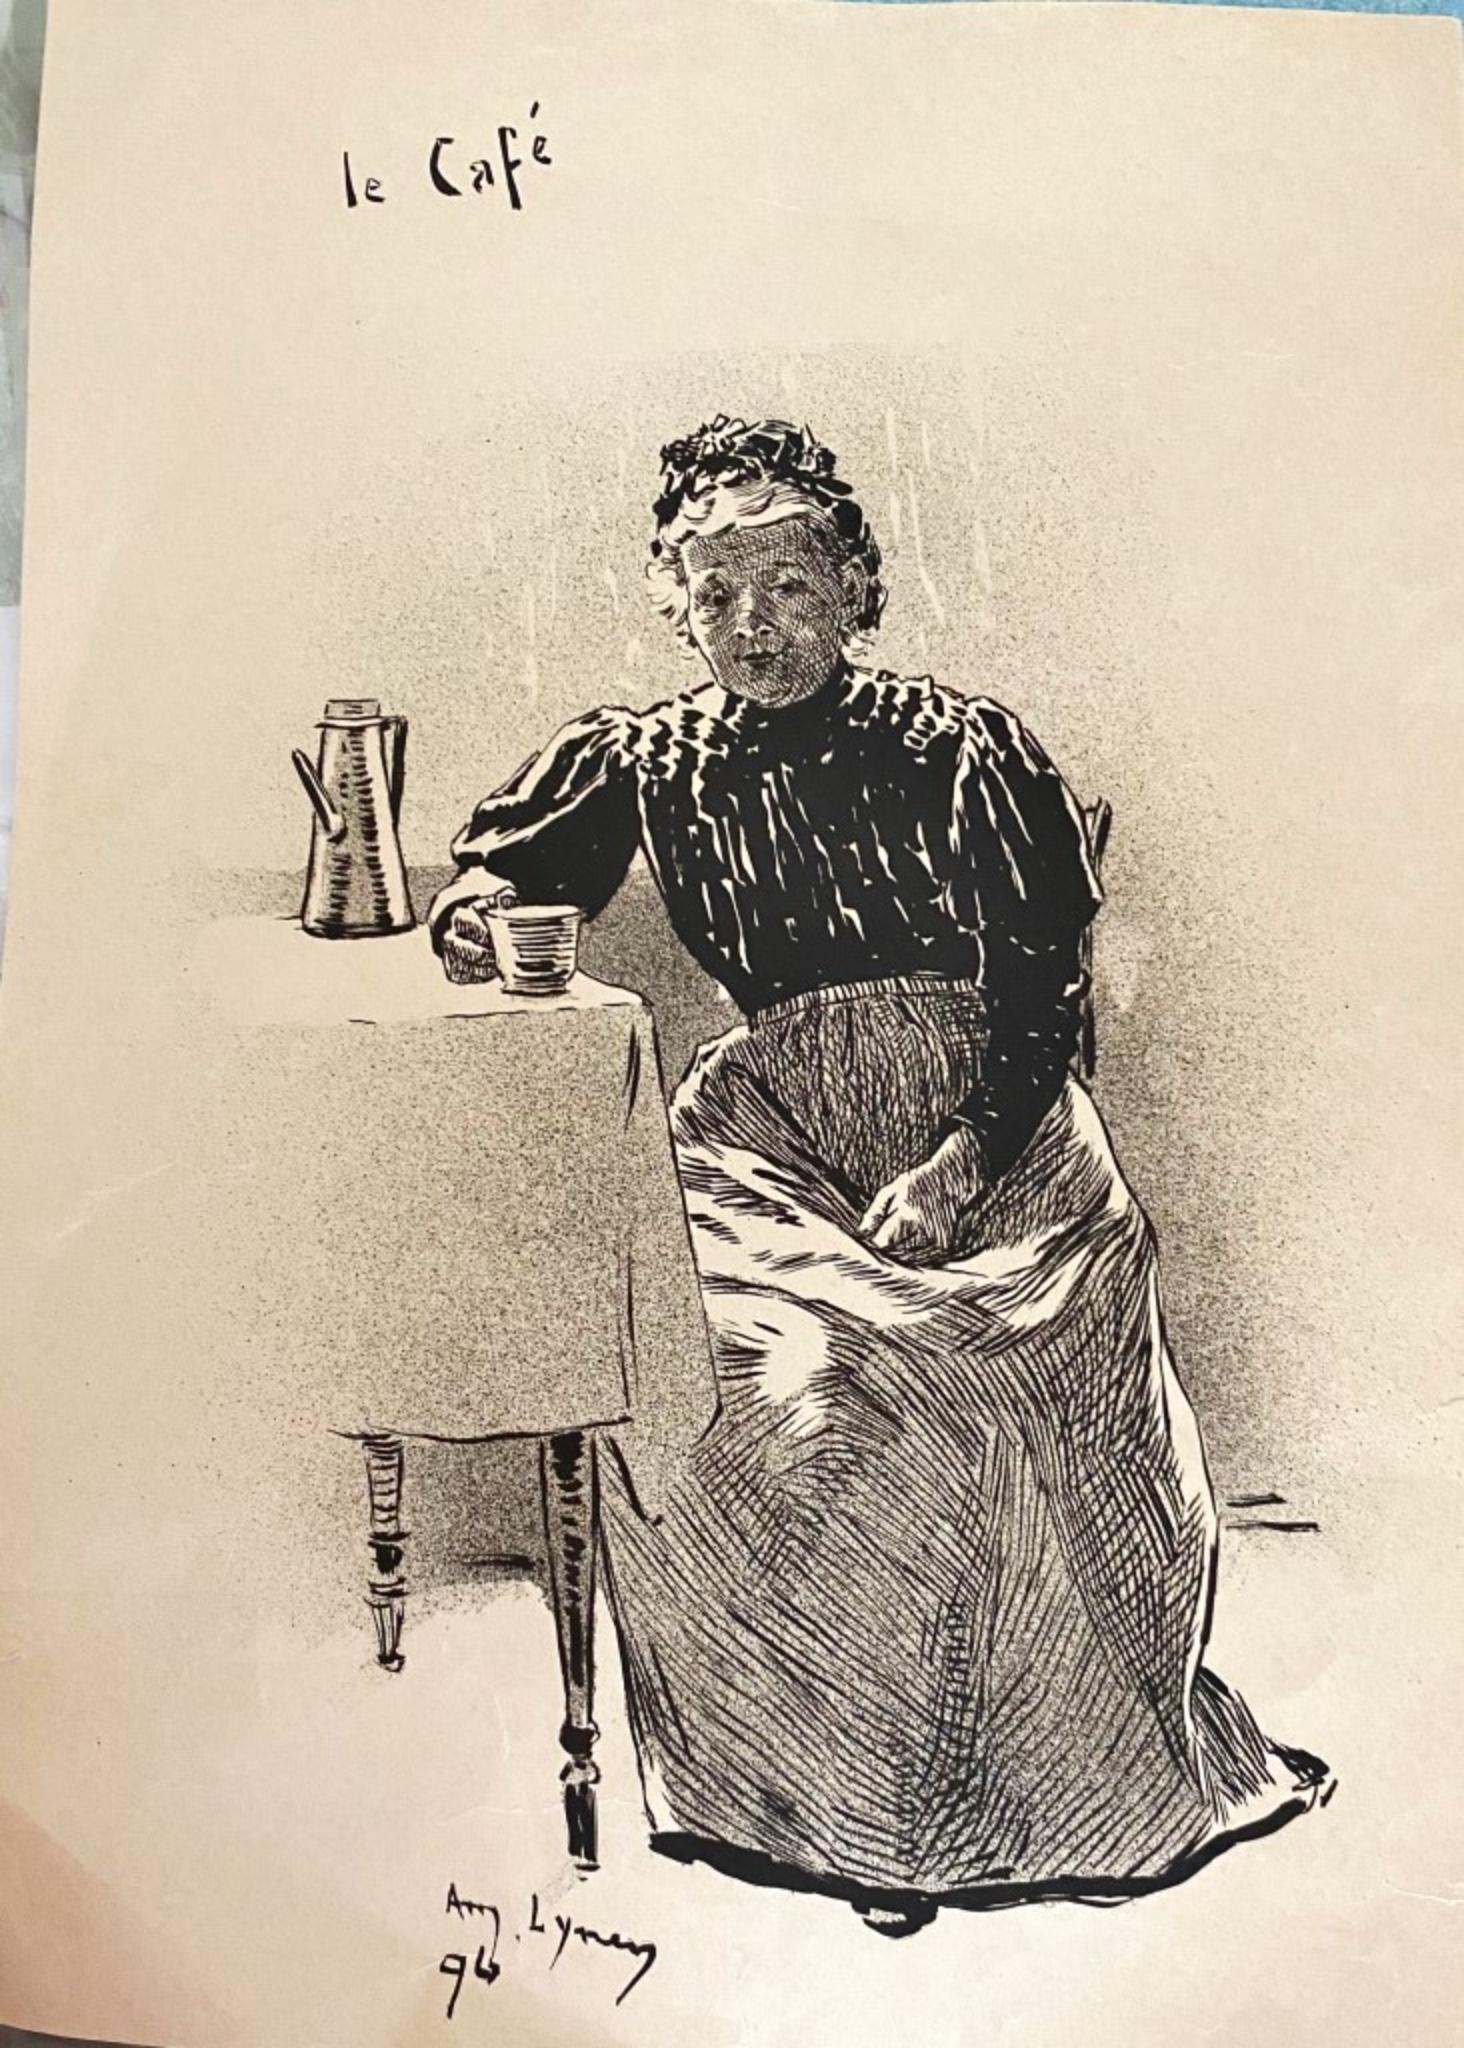 Il Café - Original Lithograph by André Lynen - 1896